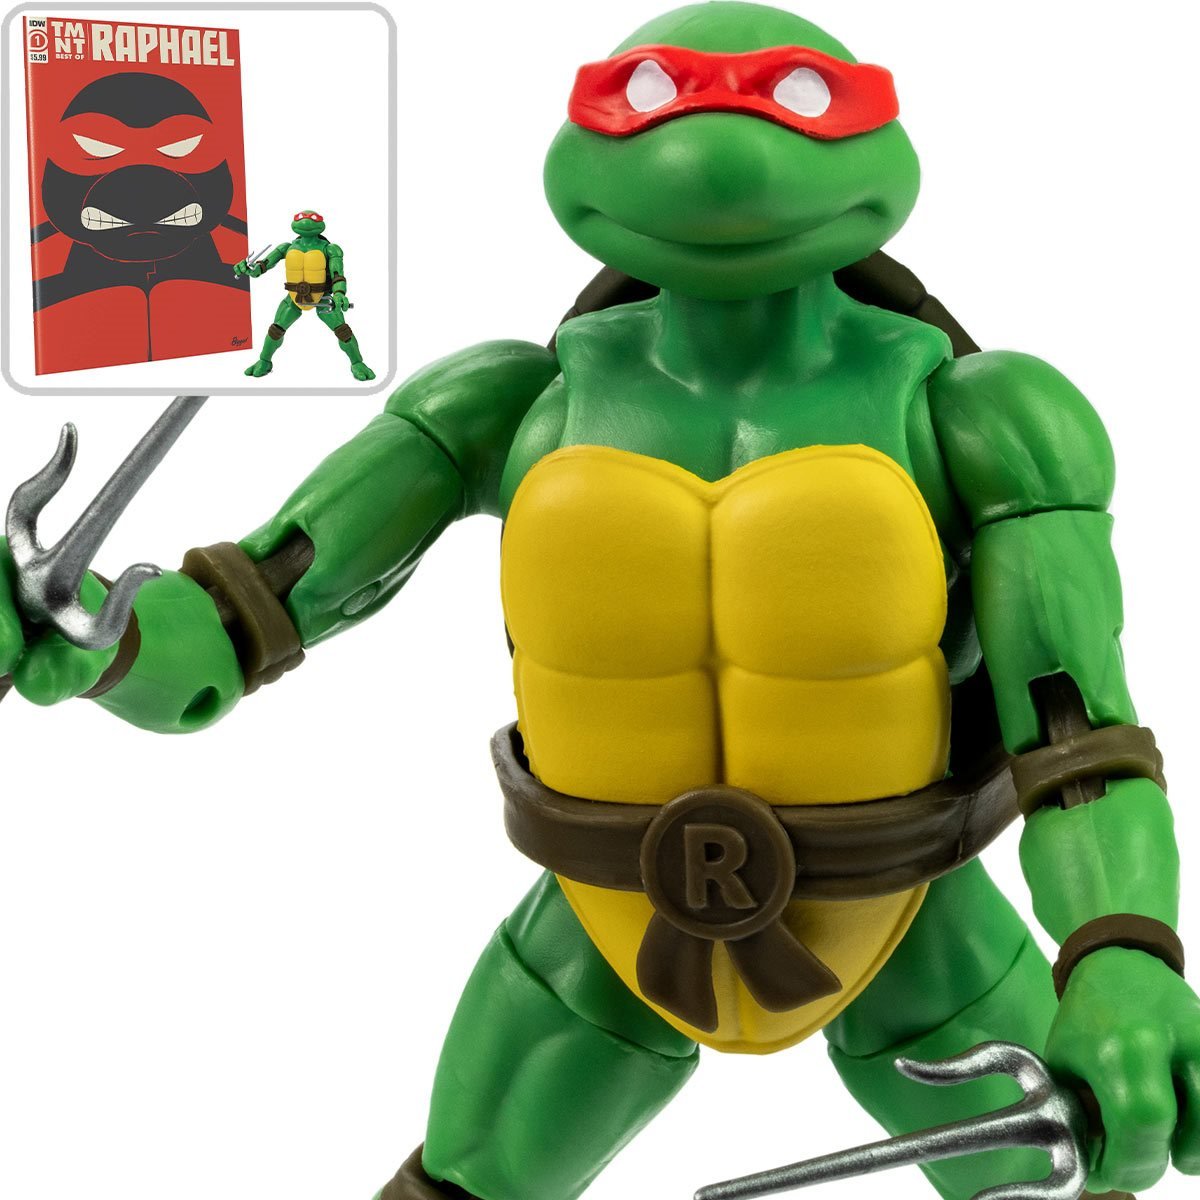 Teenage Mutant Ninja Turtles 5 Super Shredder Basic Action Figure 